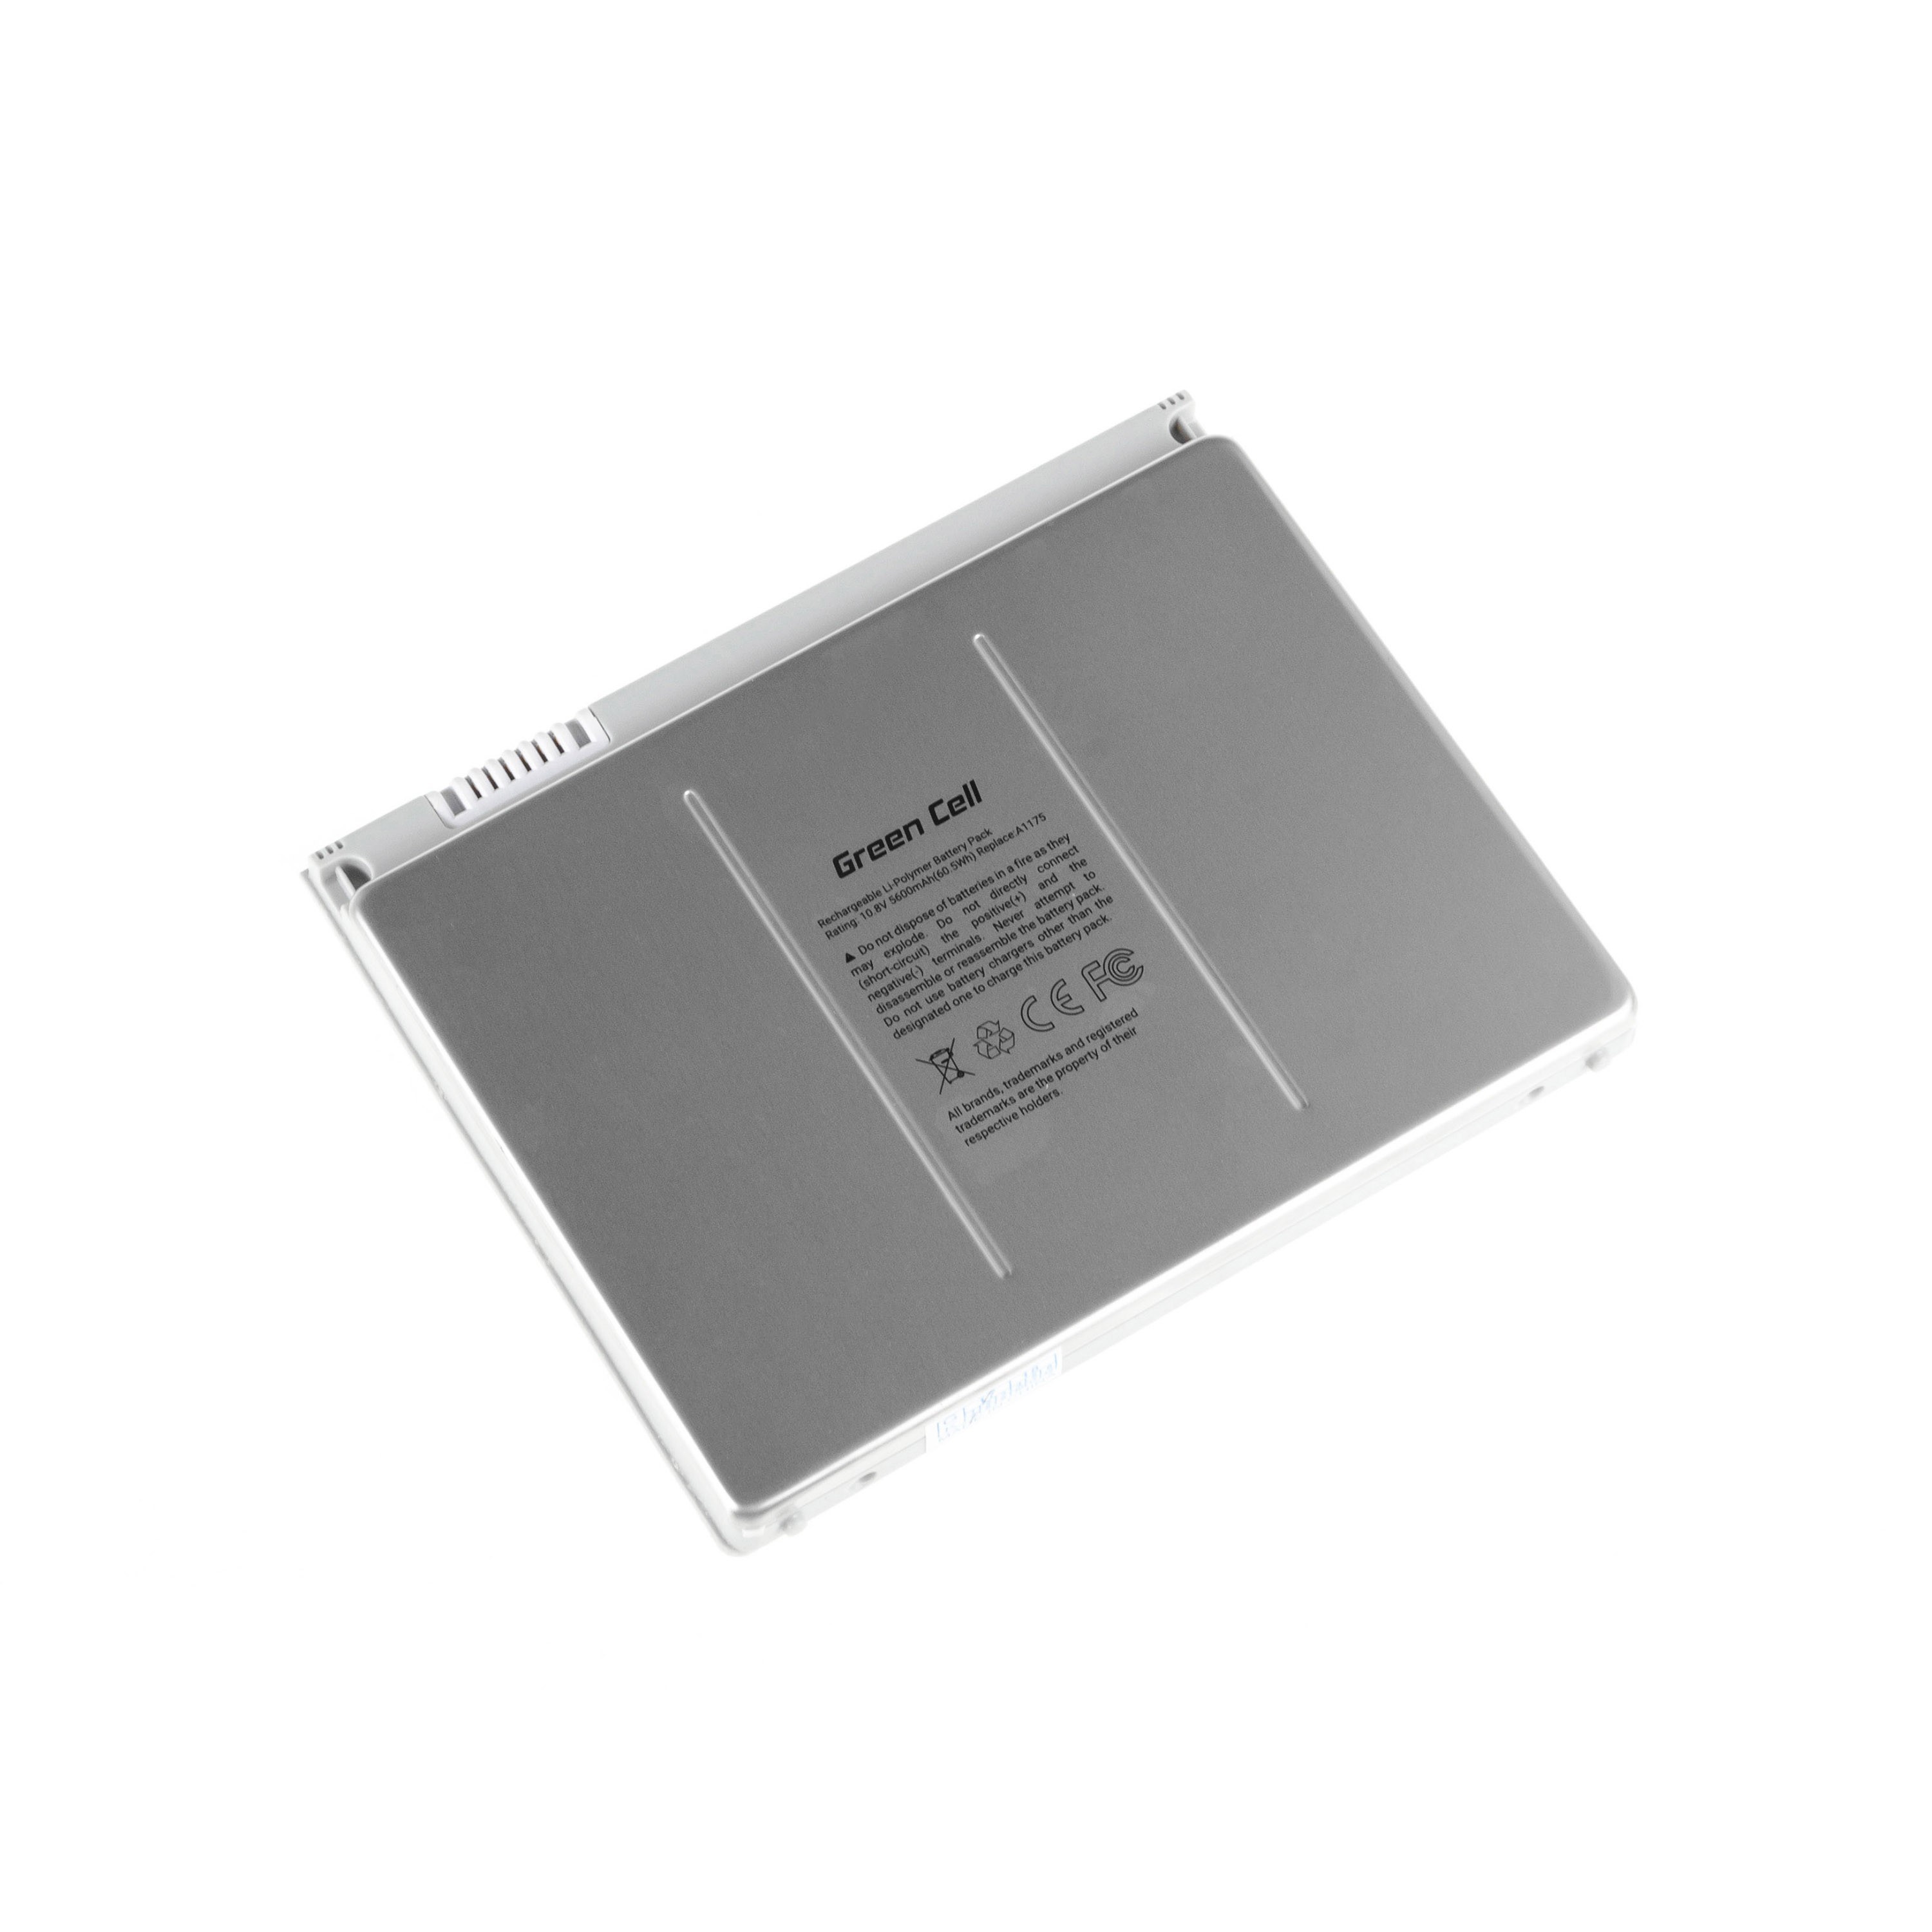 PRO Batterij voor Apple Macbook Pro 15 A1150 A1211 A1226 A1260 2006-2008 / 11,1V 5600mAh